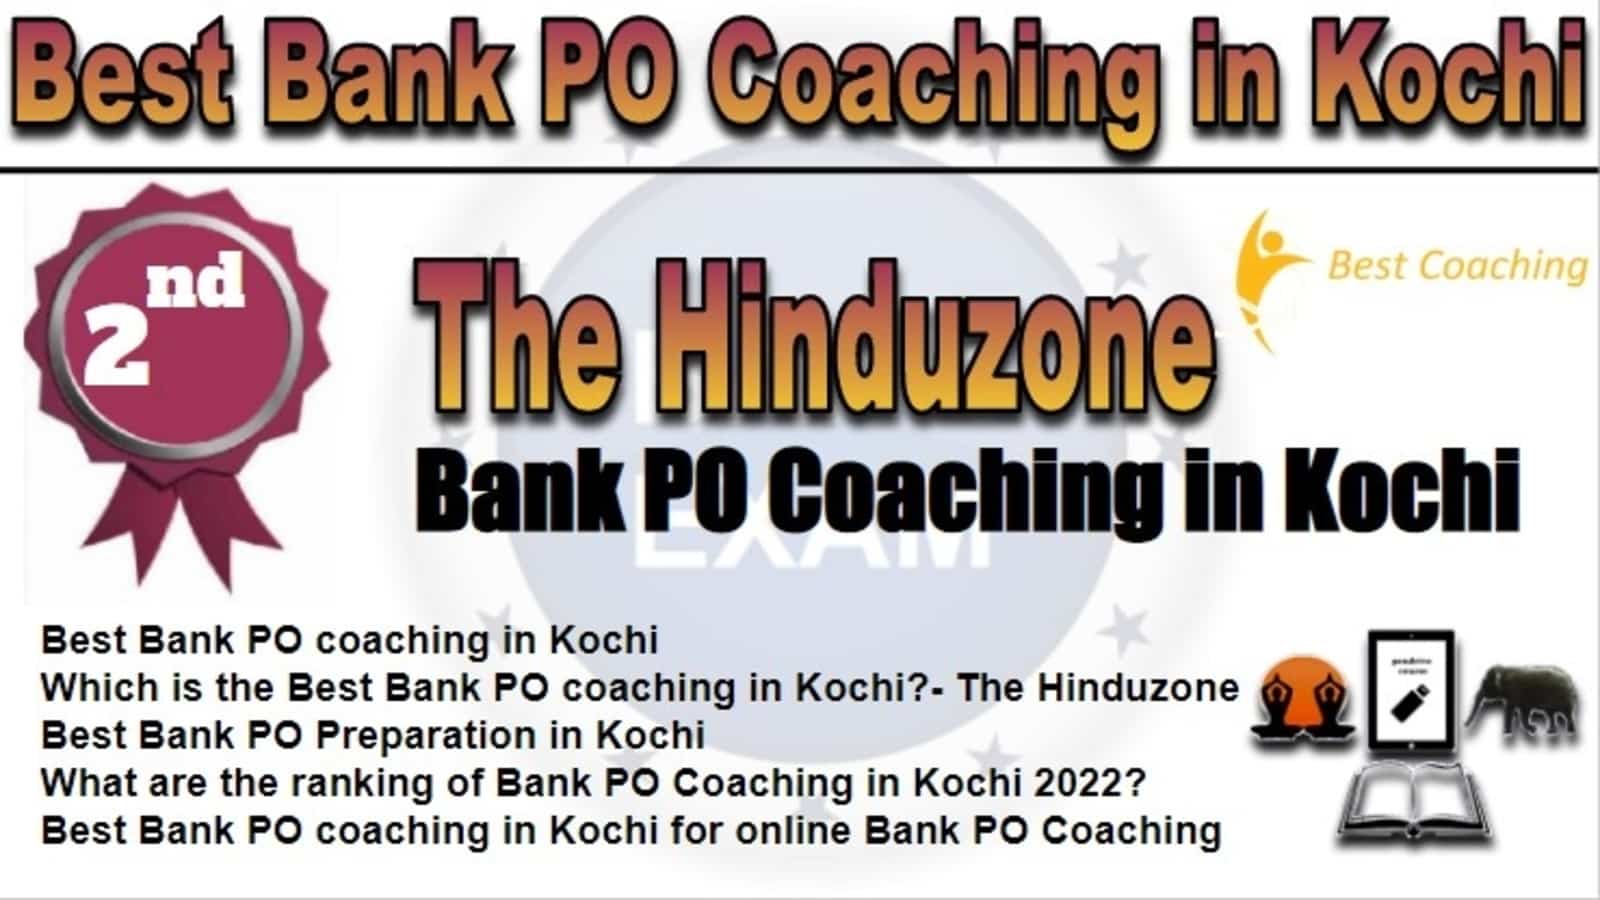 Rank 2 Best Bank PO Coaching in Kochi